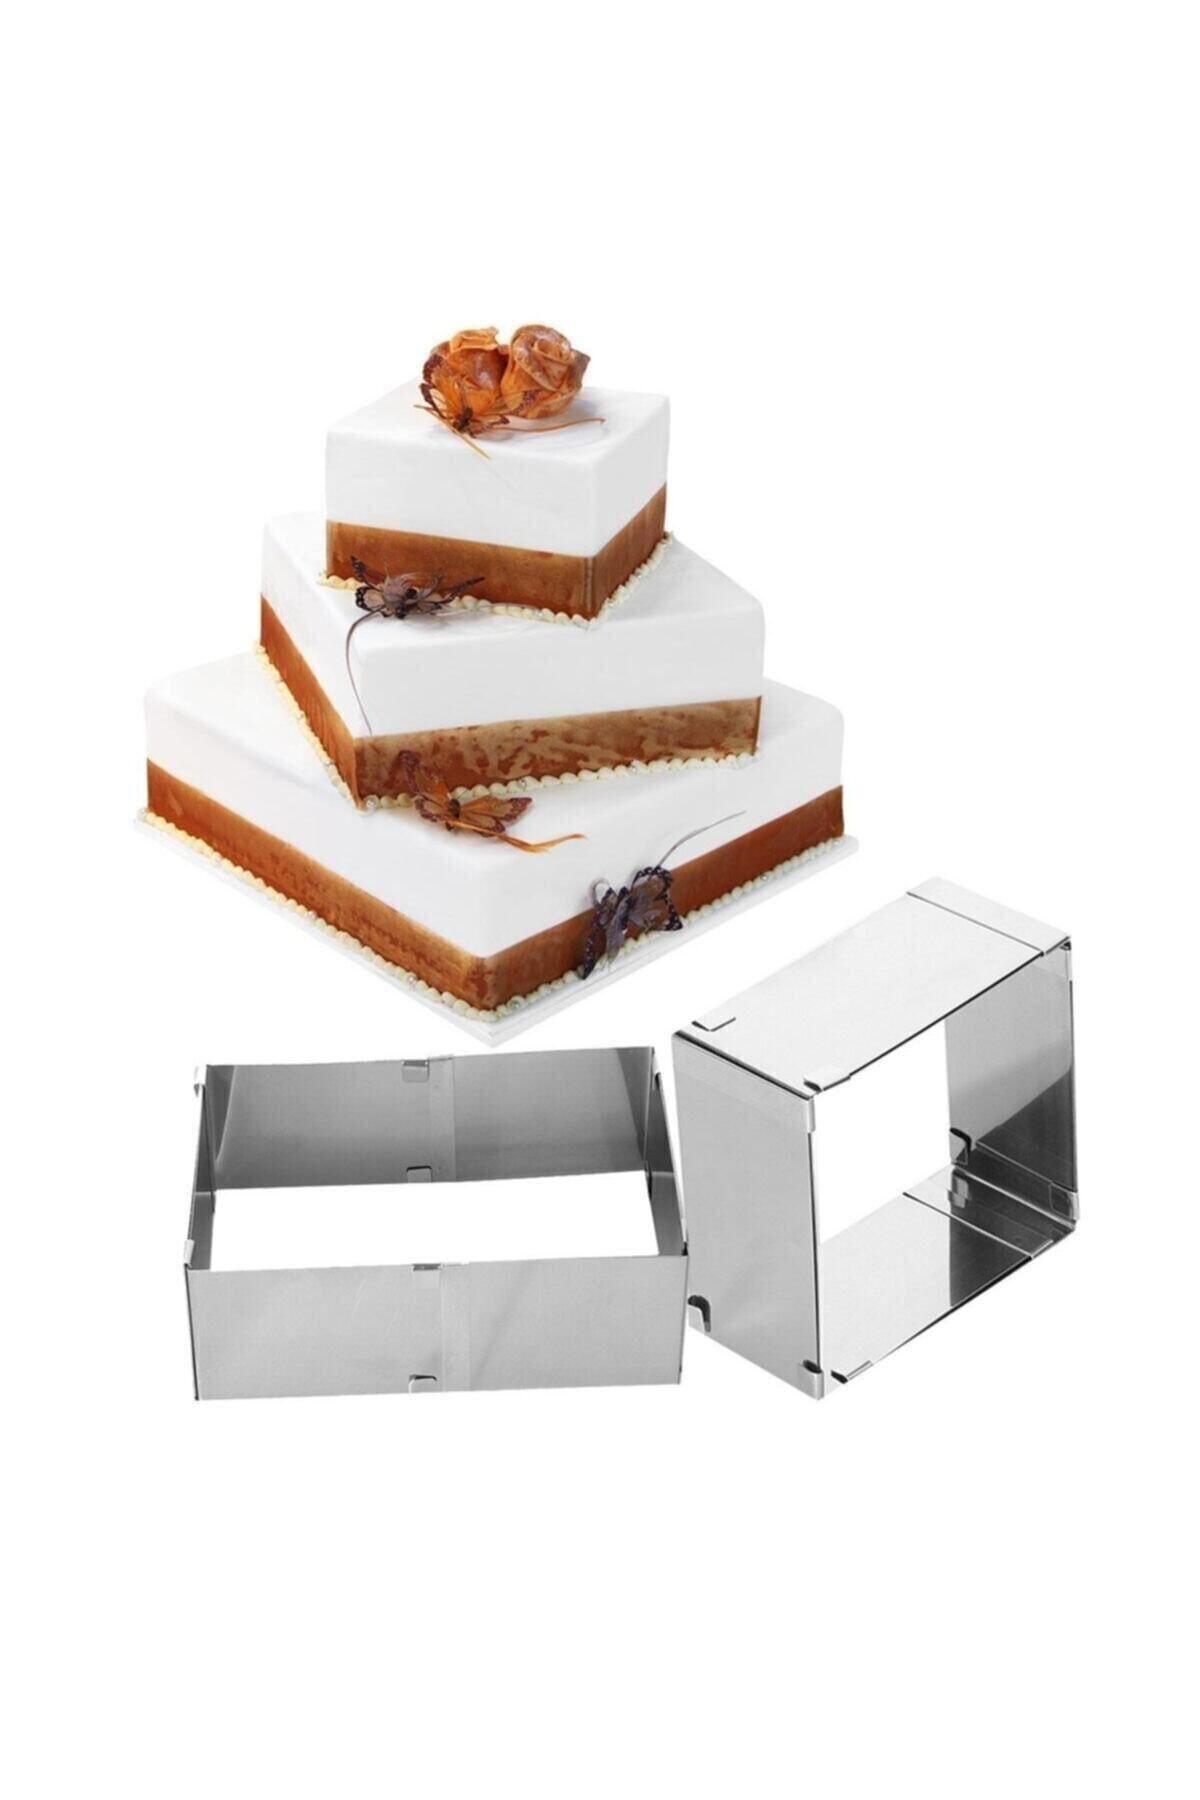 inokstech Kare Ayarlanabilir 8 Cm Paslanmaz Çelik Kek Pasta Pandispanya Kalıbı Çemberi.